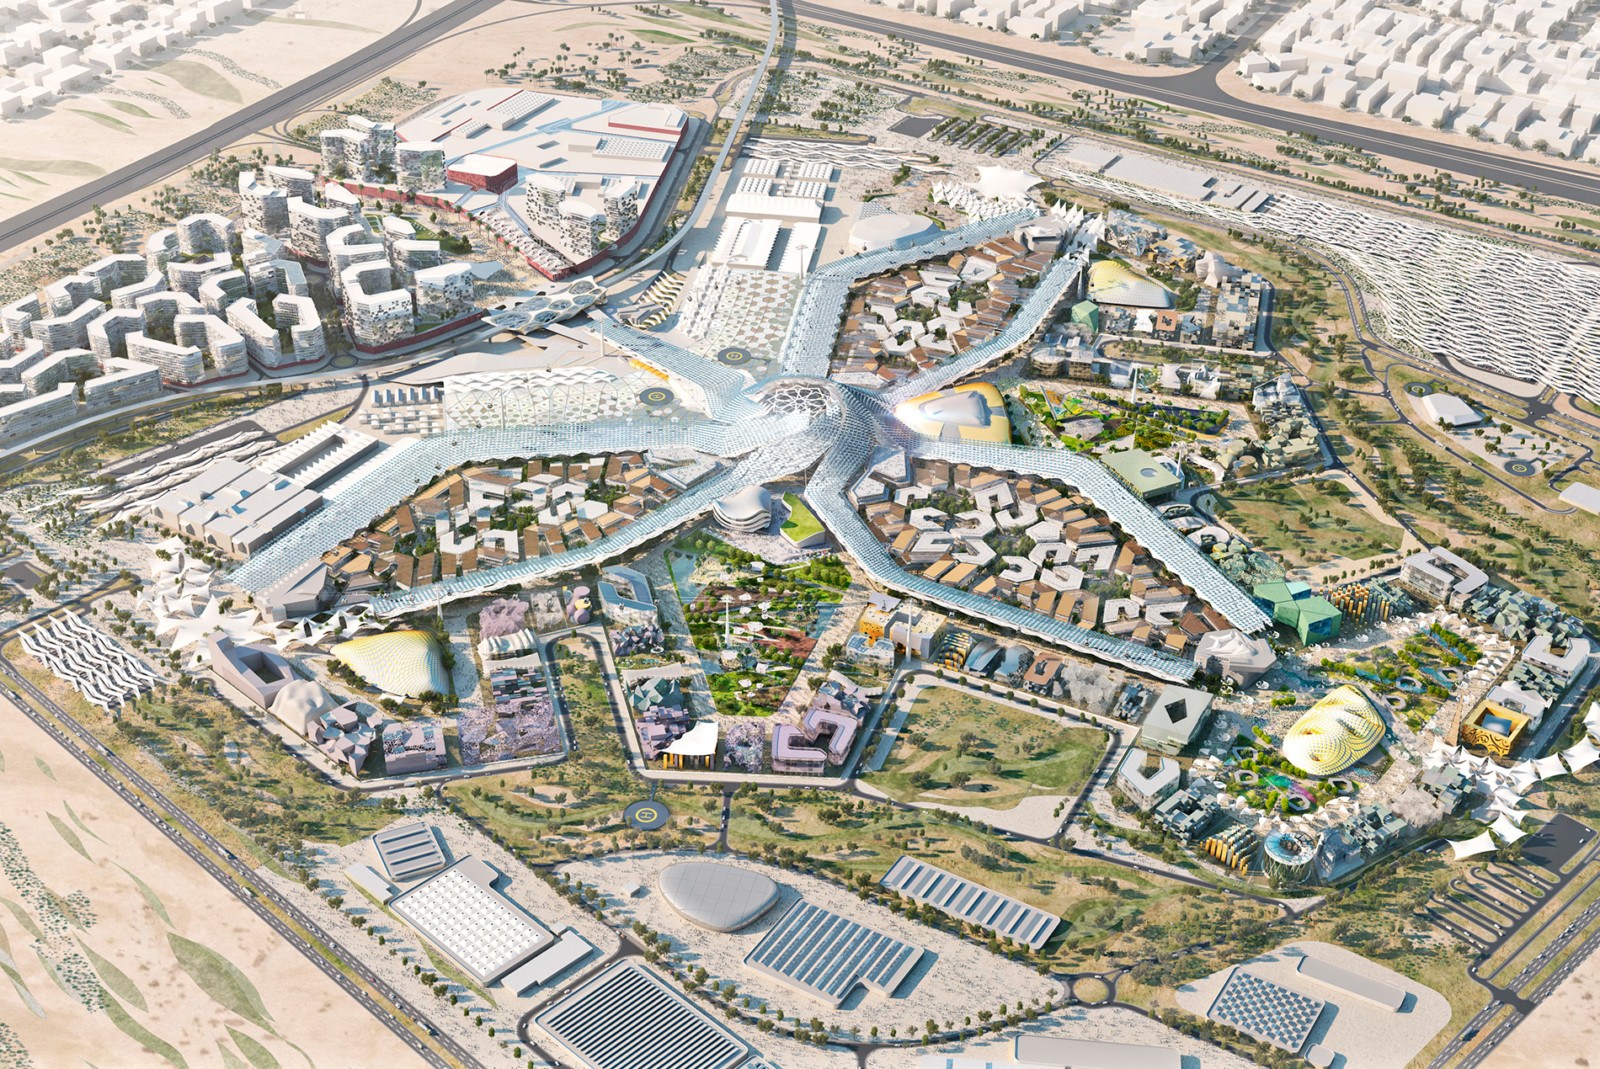 https://www.hok.com/wp-content/uploads/2019/05/Dubai-Expo-2020-Master-Plan-AERIAL-1900-1600x1069.jpg